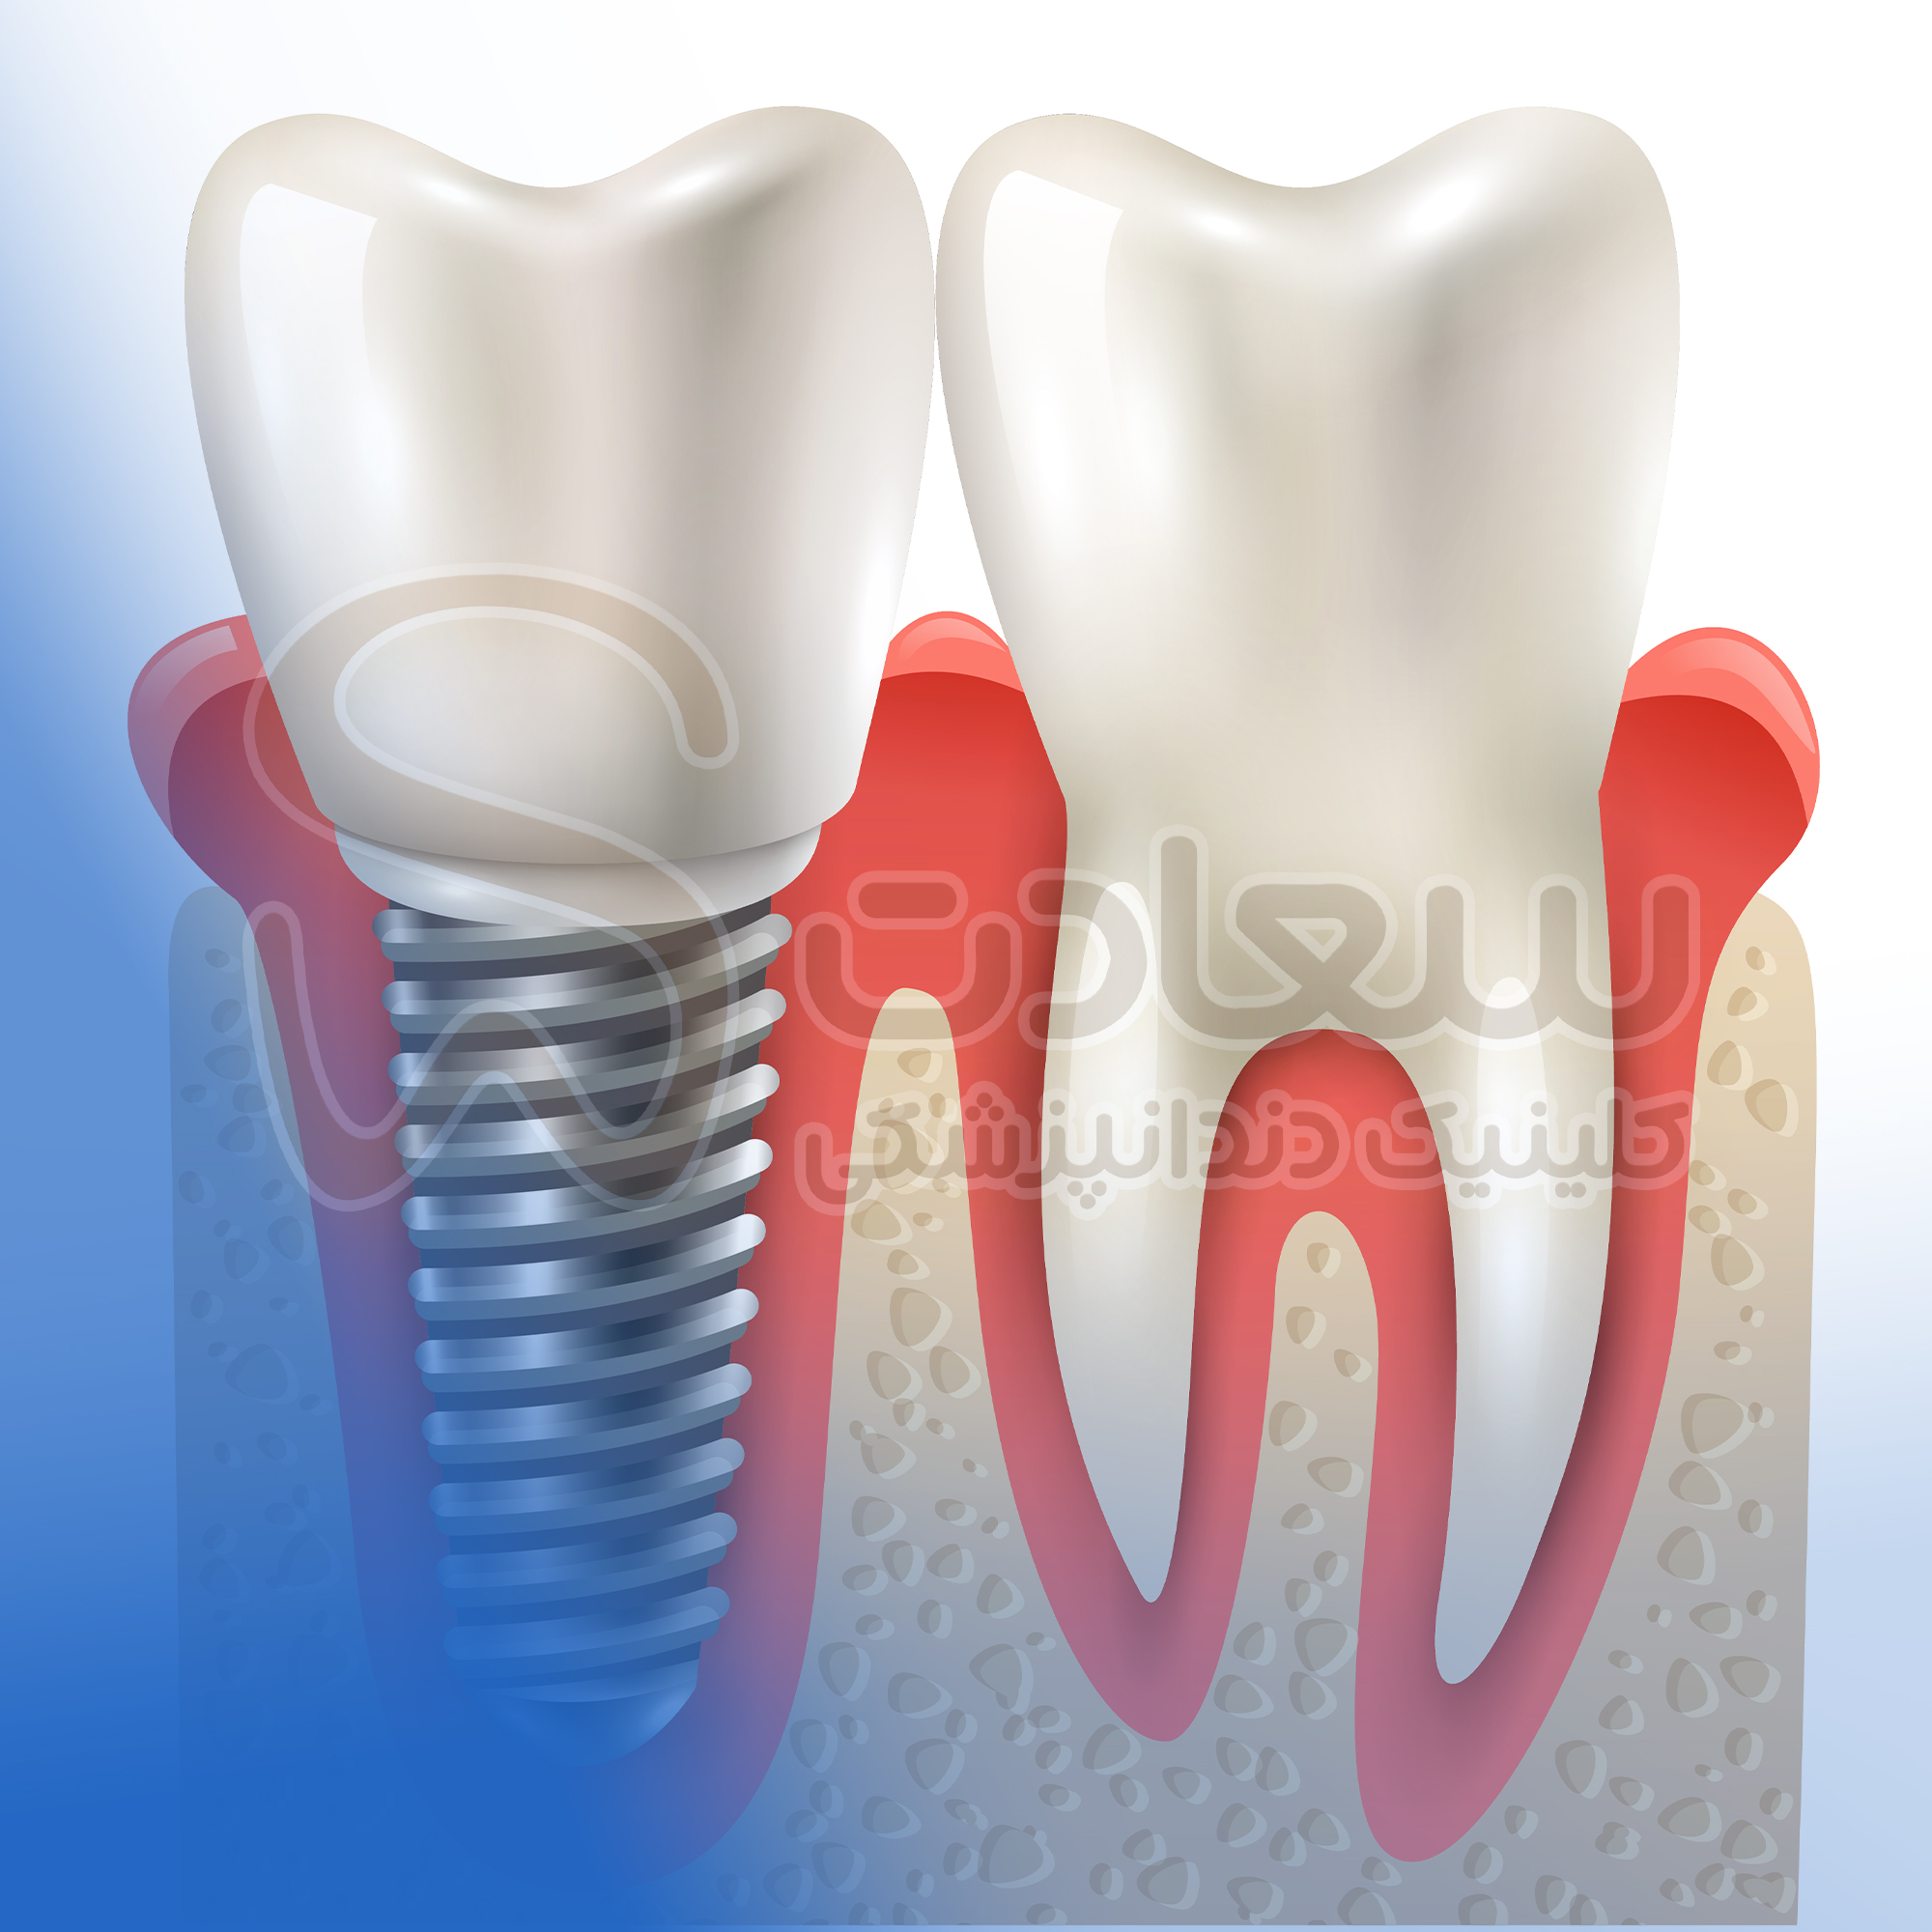 implant بهترین کلنیک دندانپزشکی مشهد ارائه کلیه خدمات دندانپزشکی با بهترین تجهیزات و اتاق عمل بیهوشی